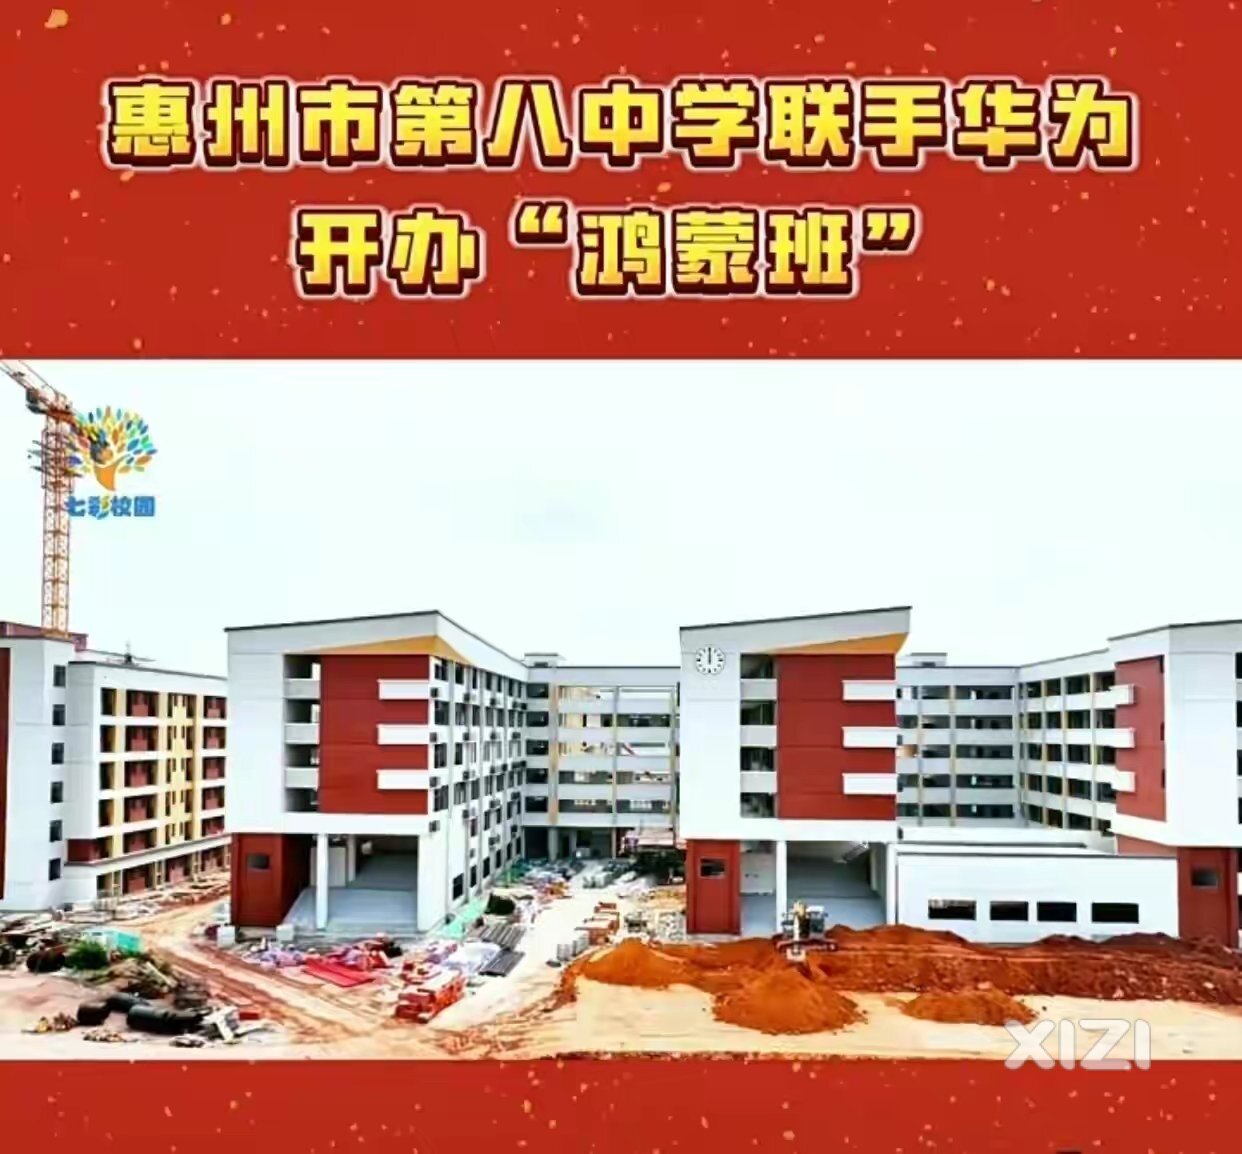 惠州市第八中学联手华为开办“鸿蒙班”